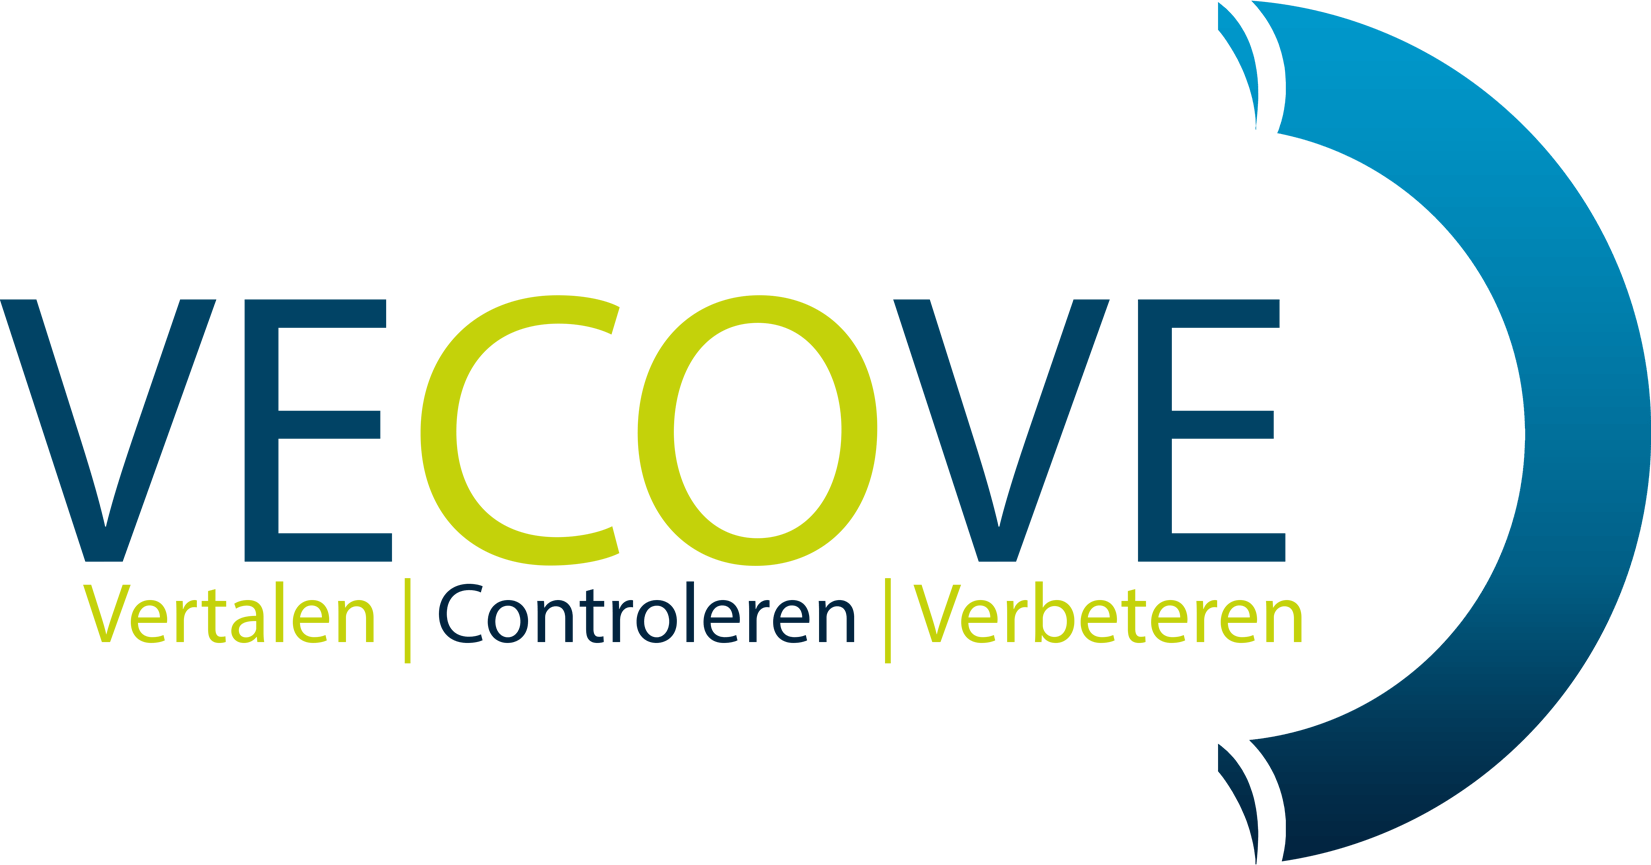 VeCoVe Vertaalbureau Logo